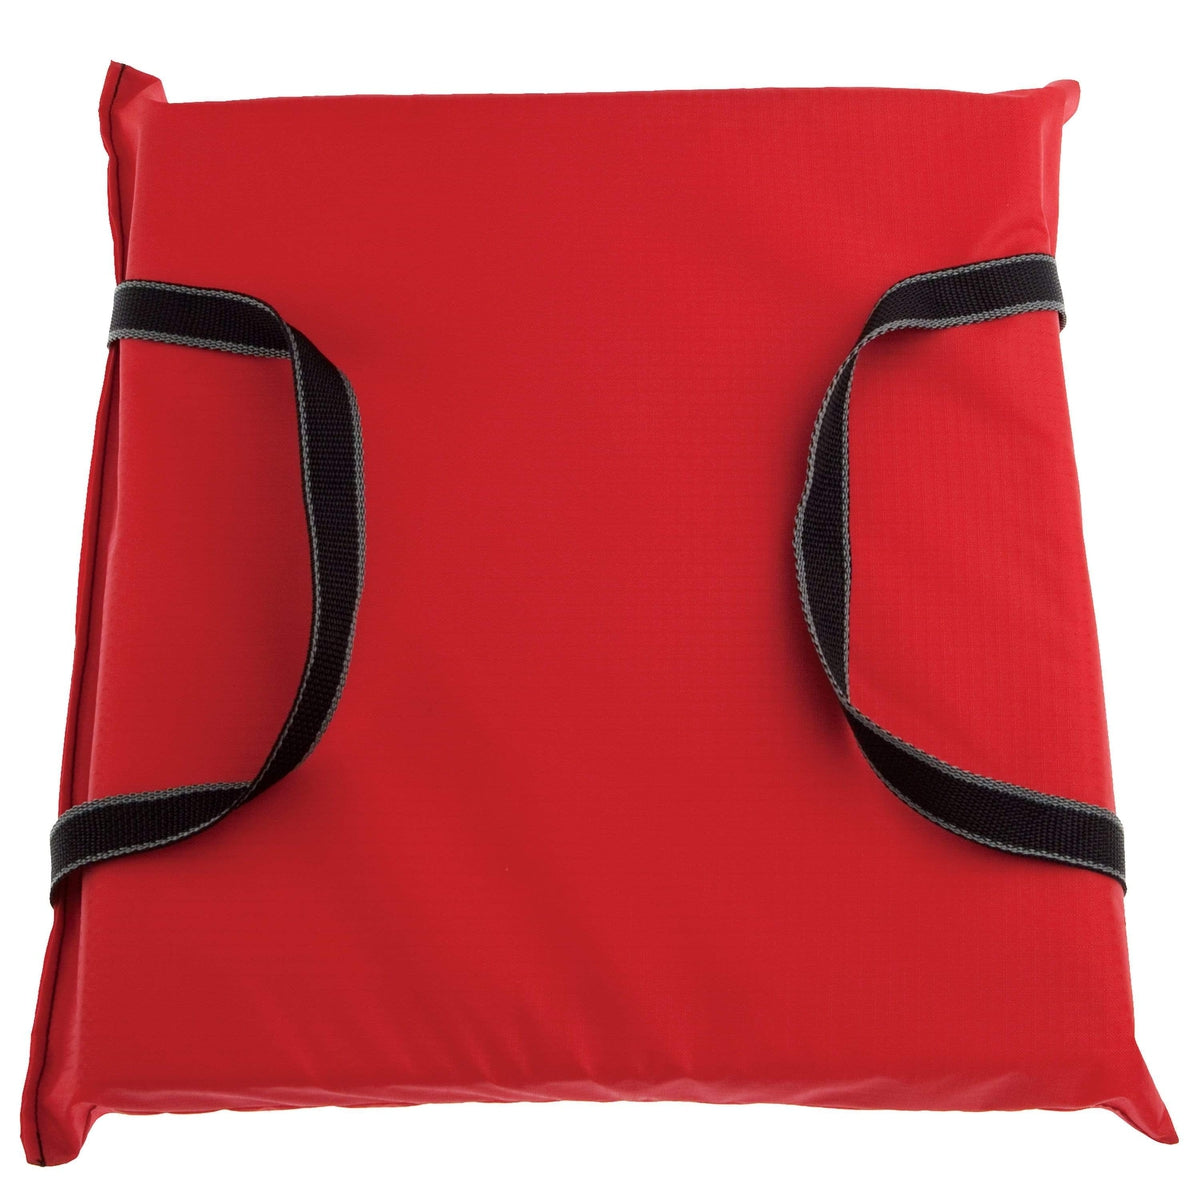 Onyx Comfort Foam Boat Cushion Red #110100-100-999-12